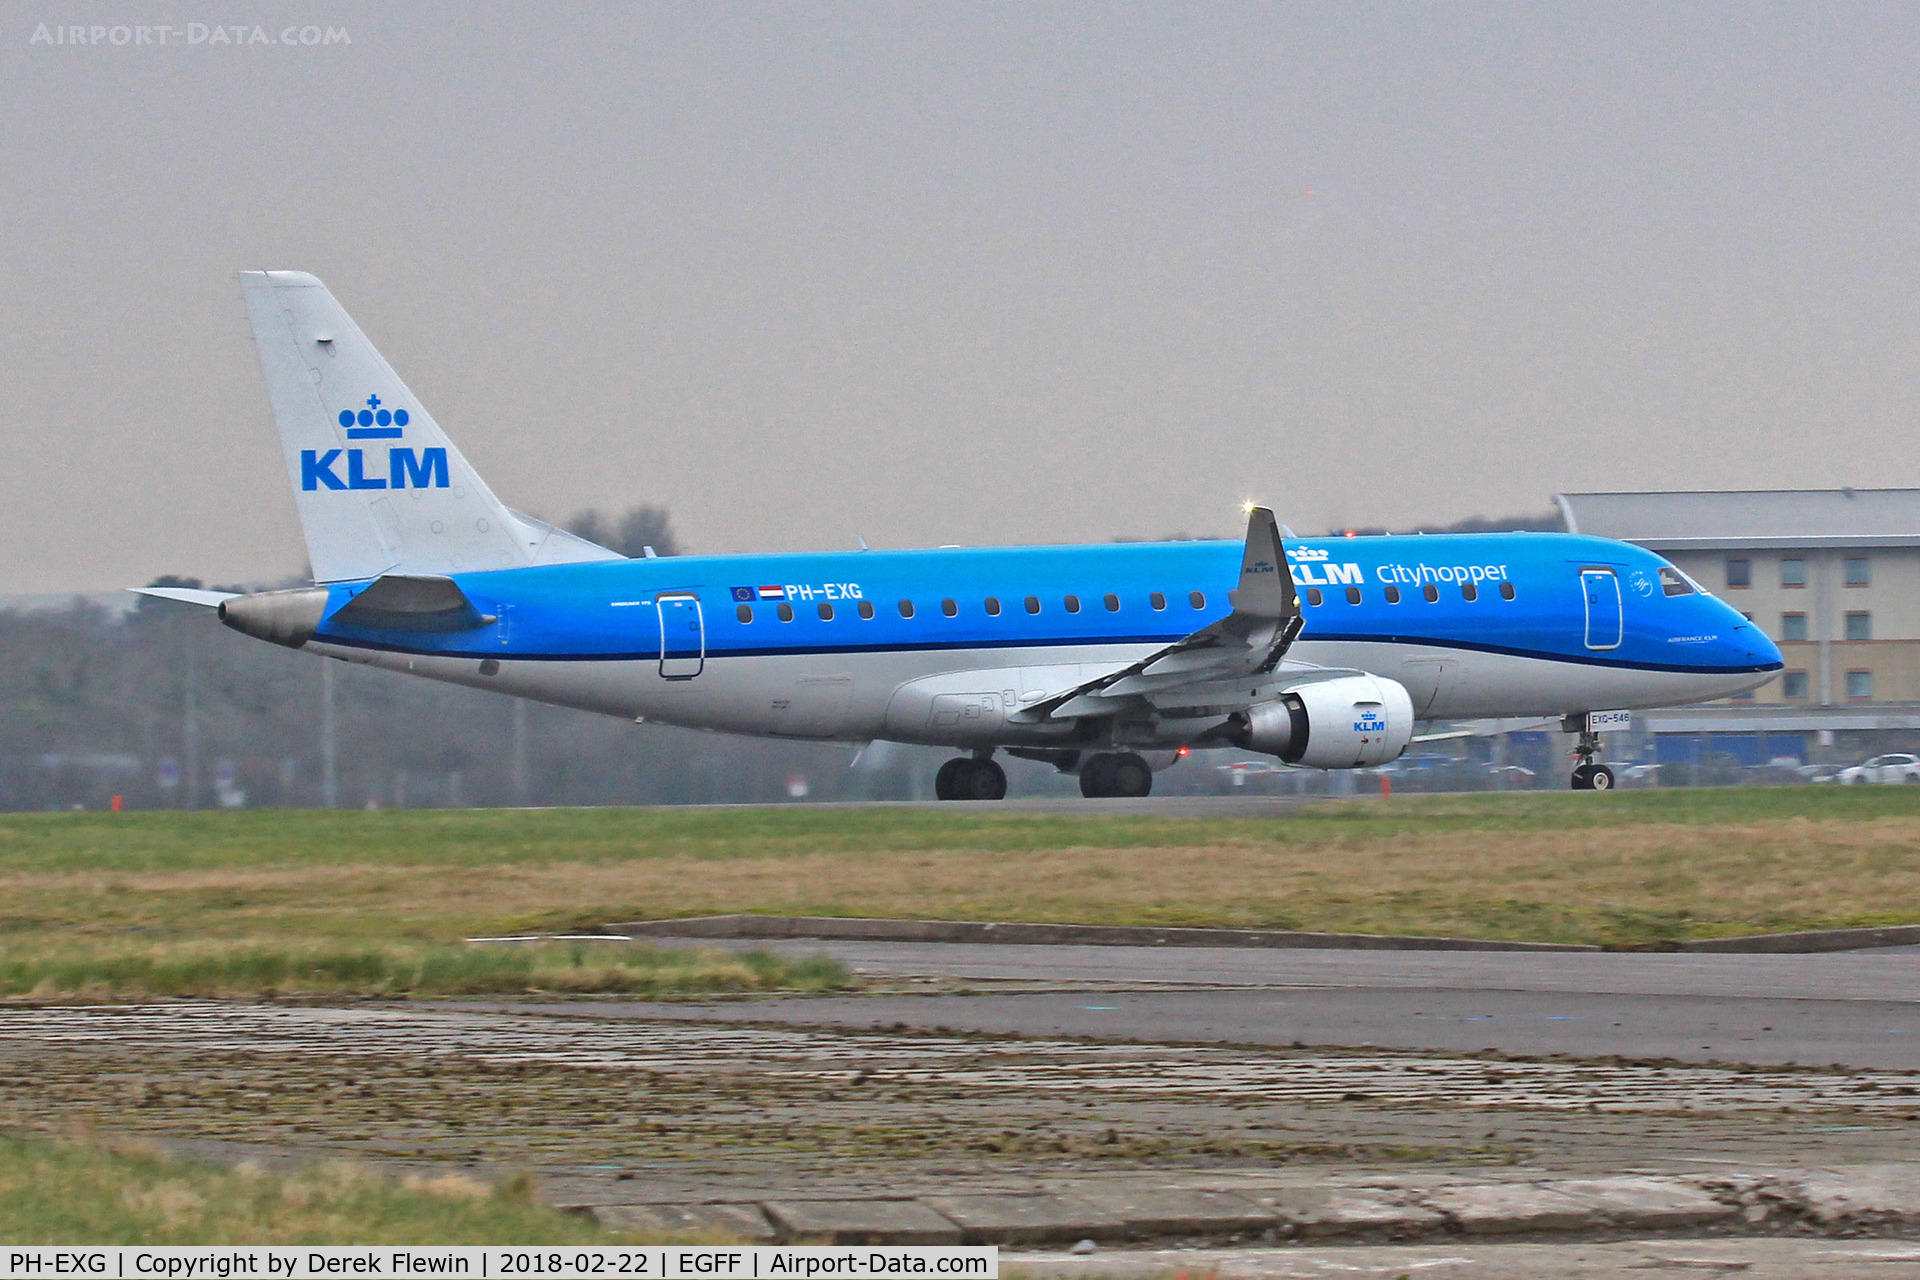 PH-EXG, 2016 Embraer 175STD (ERJ-170-200) C/N 17000546, Fokker 50, KLM callsign KLM 14N, seen departing r12 en-route to 	Amsterdam